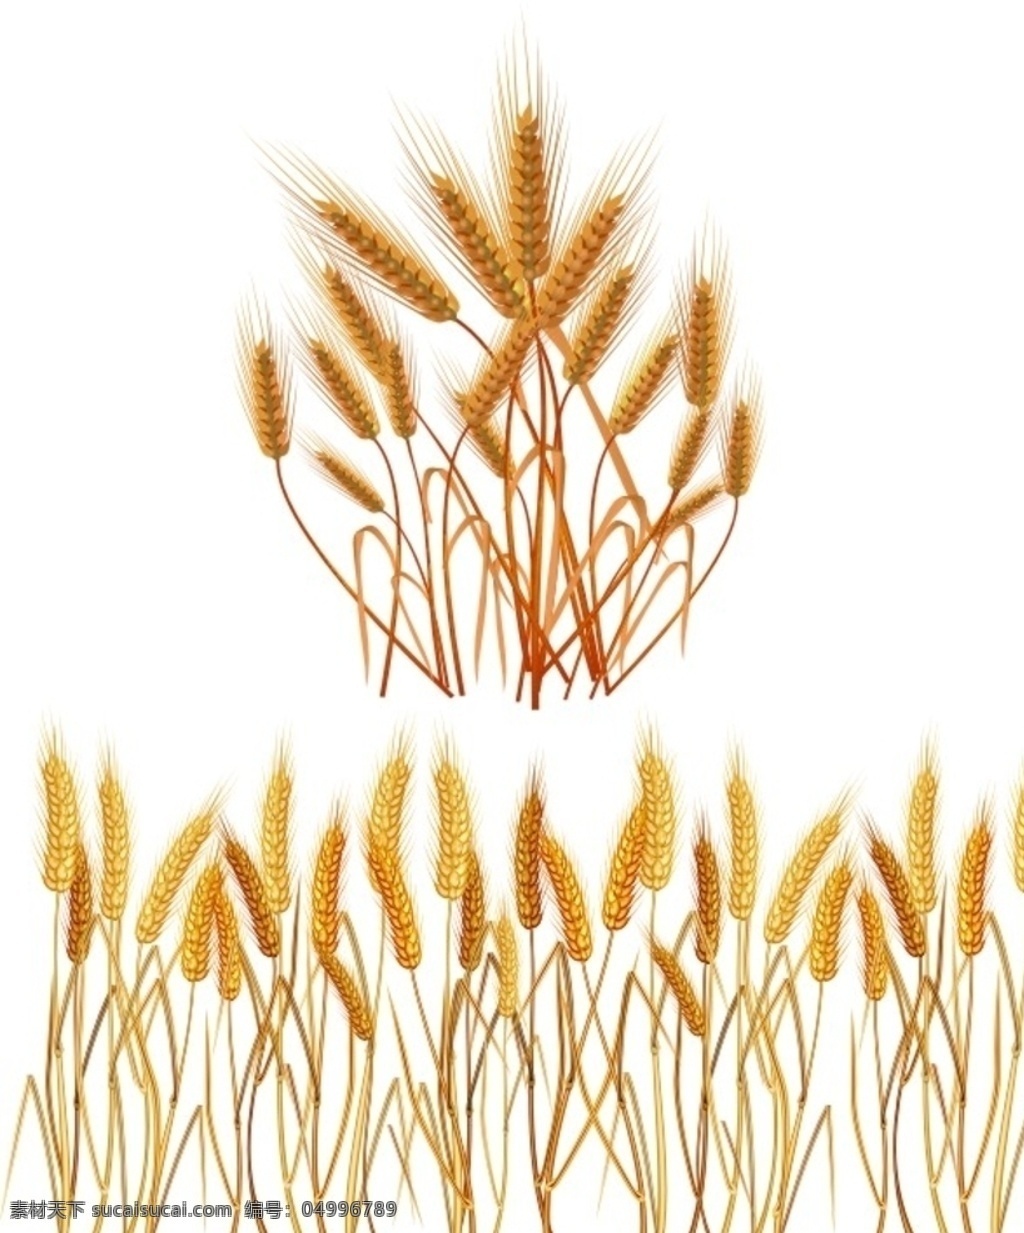 矢量麦穗 麦子 大麦 麦田 金色小麦 矢量麦子素材 矢量金色小麦 大丰收 麦子熟了 矢量麦子 矢量小麦 金色麦子 粮食 收获 麦穗矢量素材 矢量 麦粒 农作物 麦穗